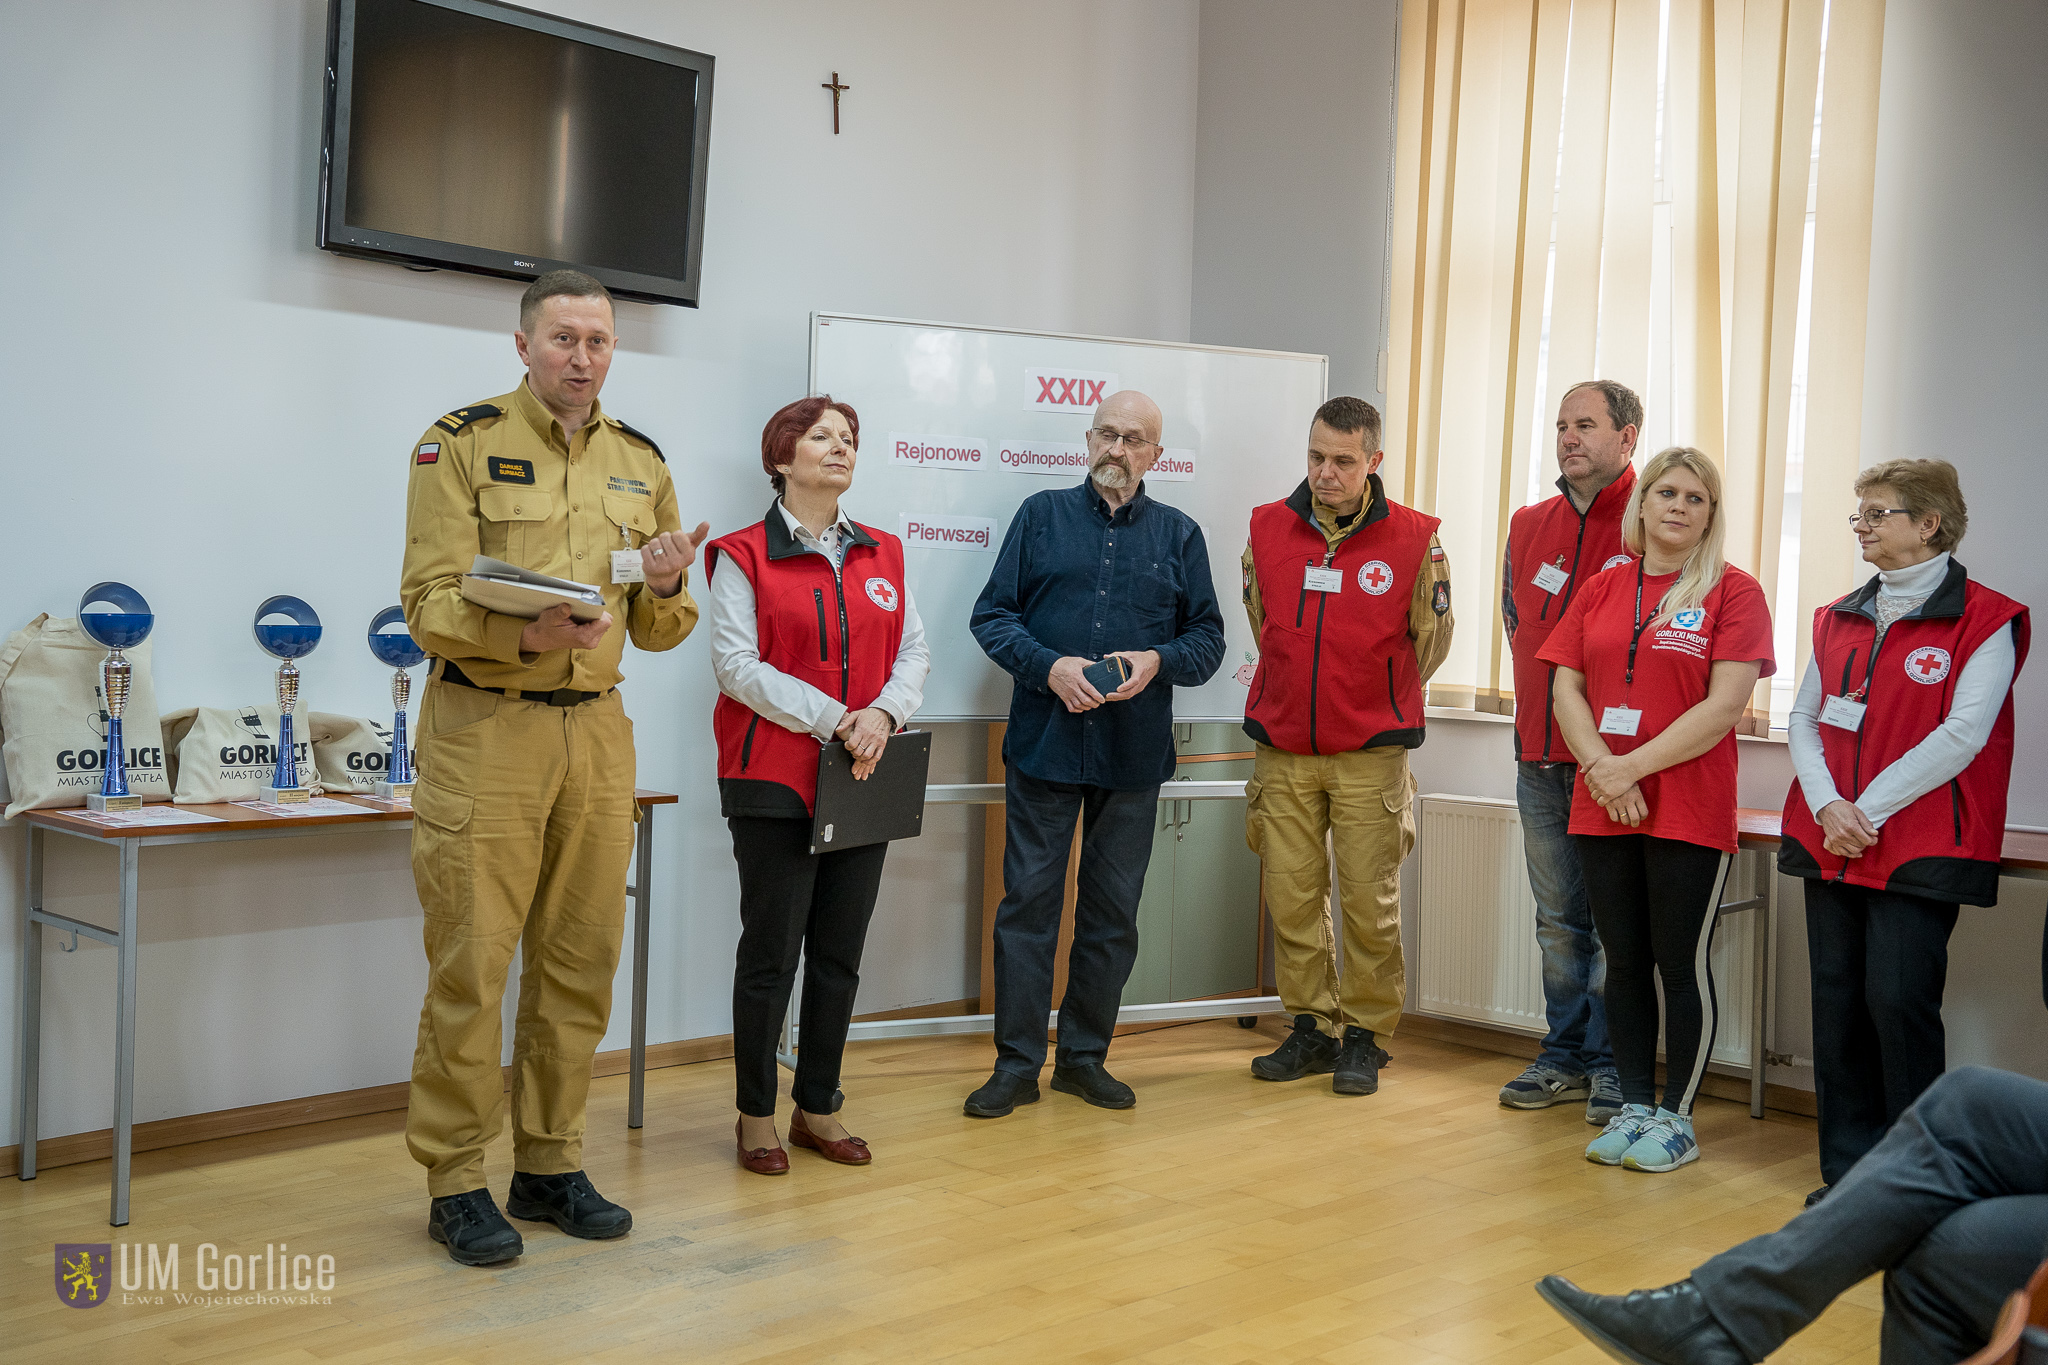 XXIX Ogólnopolskie Mistrzostwa Pierwszej Pomocy Polskiego Czerwonego Krzyża w Gorlicach